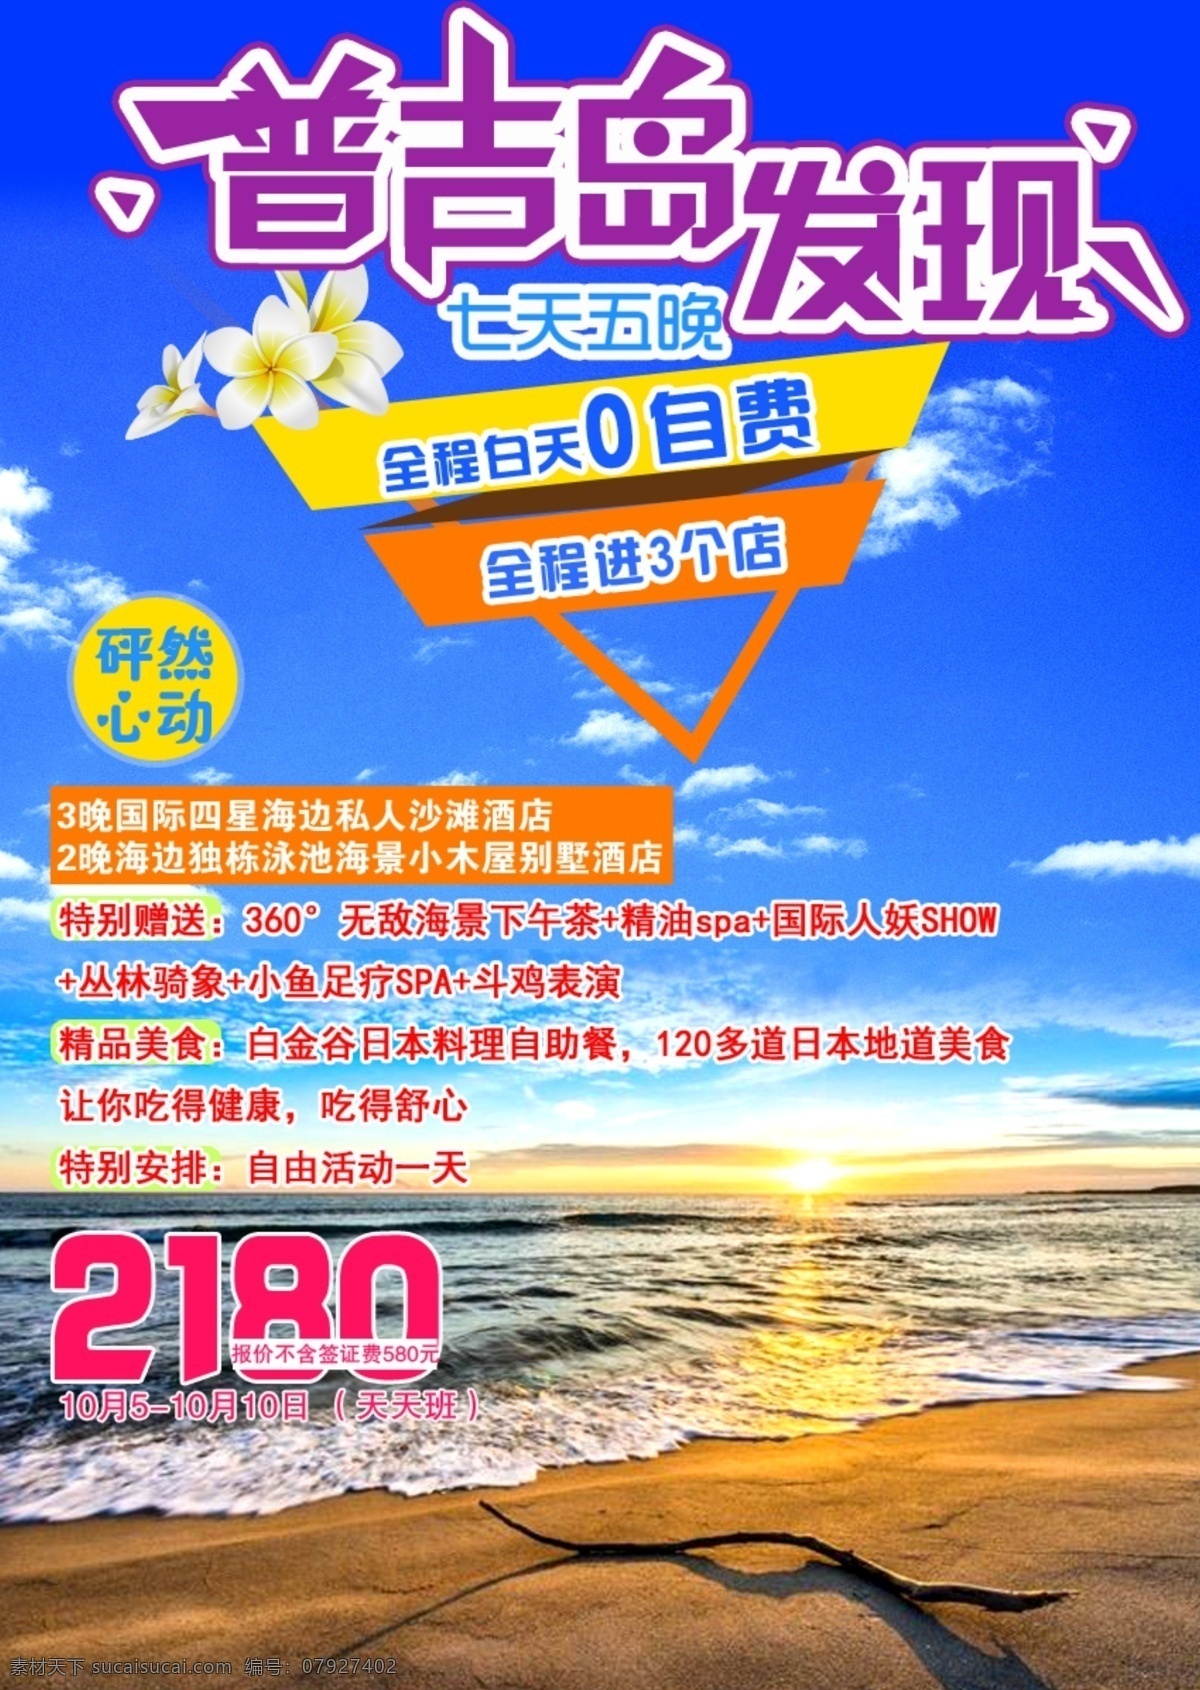 舒心 普吉 创意 广告 普吉岛 发现 花朵 海边 海浪 沙滩 海报 旅游 蓝天 白云 海 艺术字 版式设计 排版 活泼 粉色 紫色 怦然心动 彩色 景点